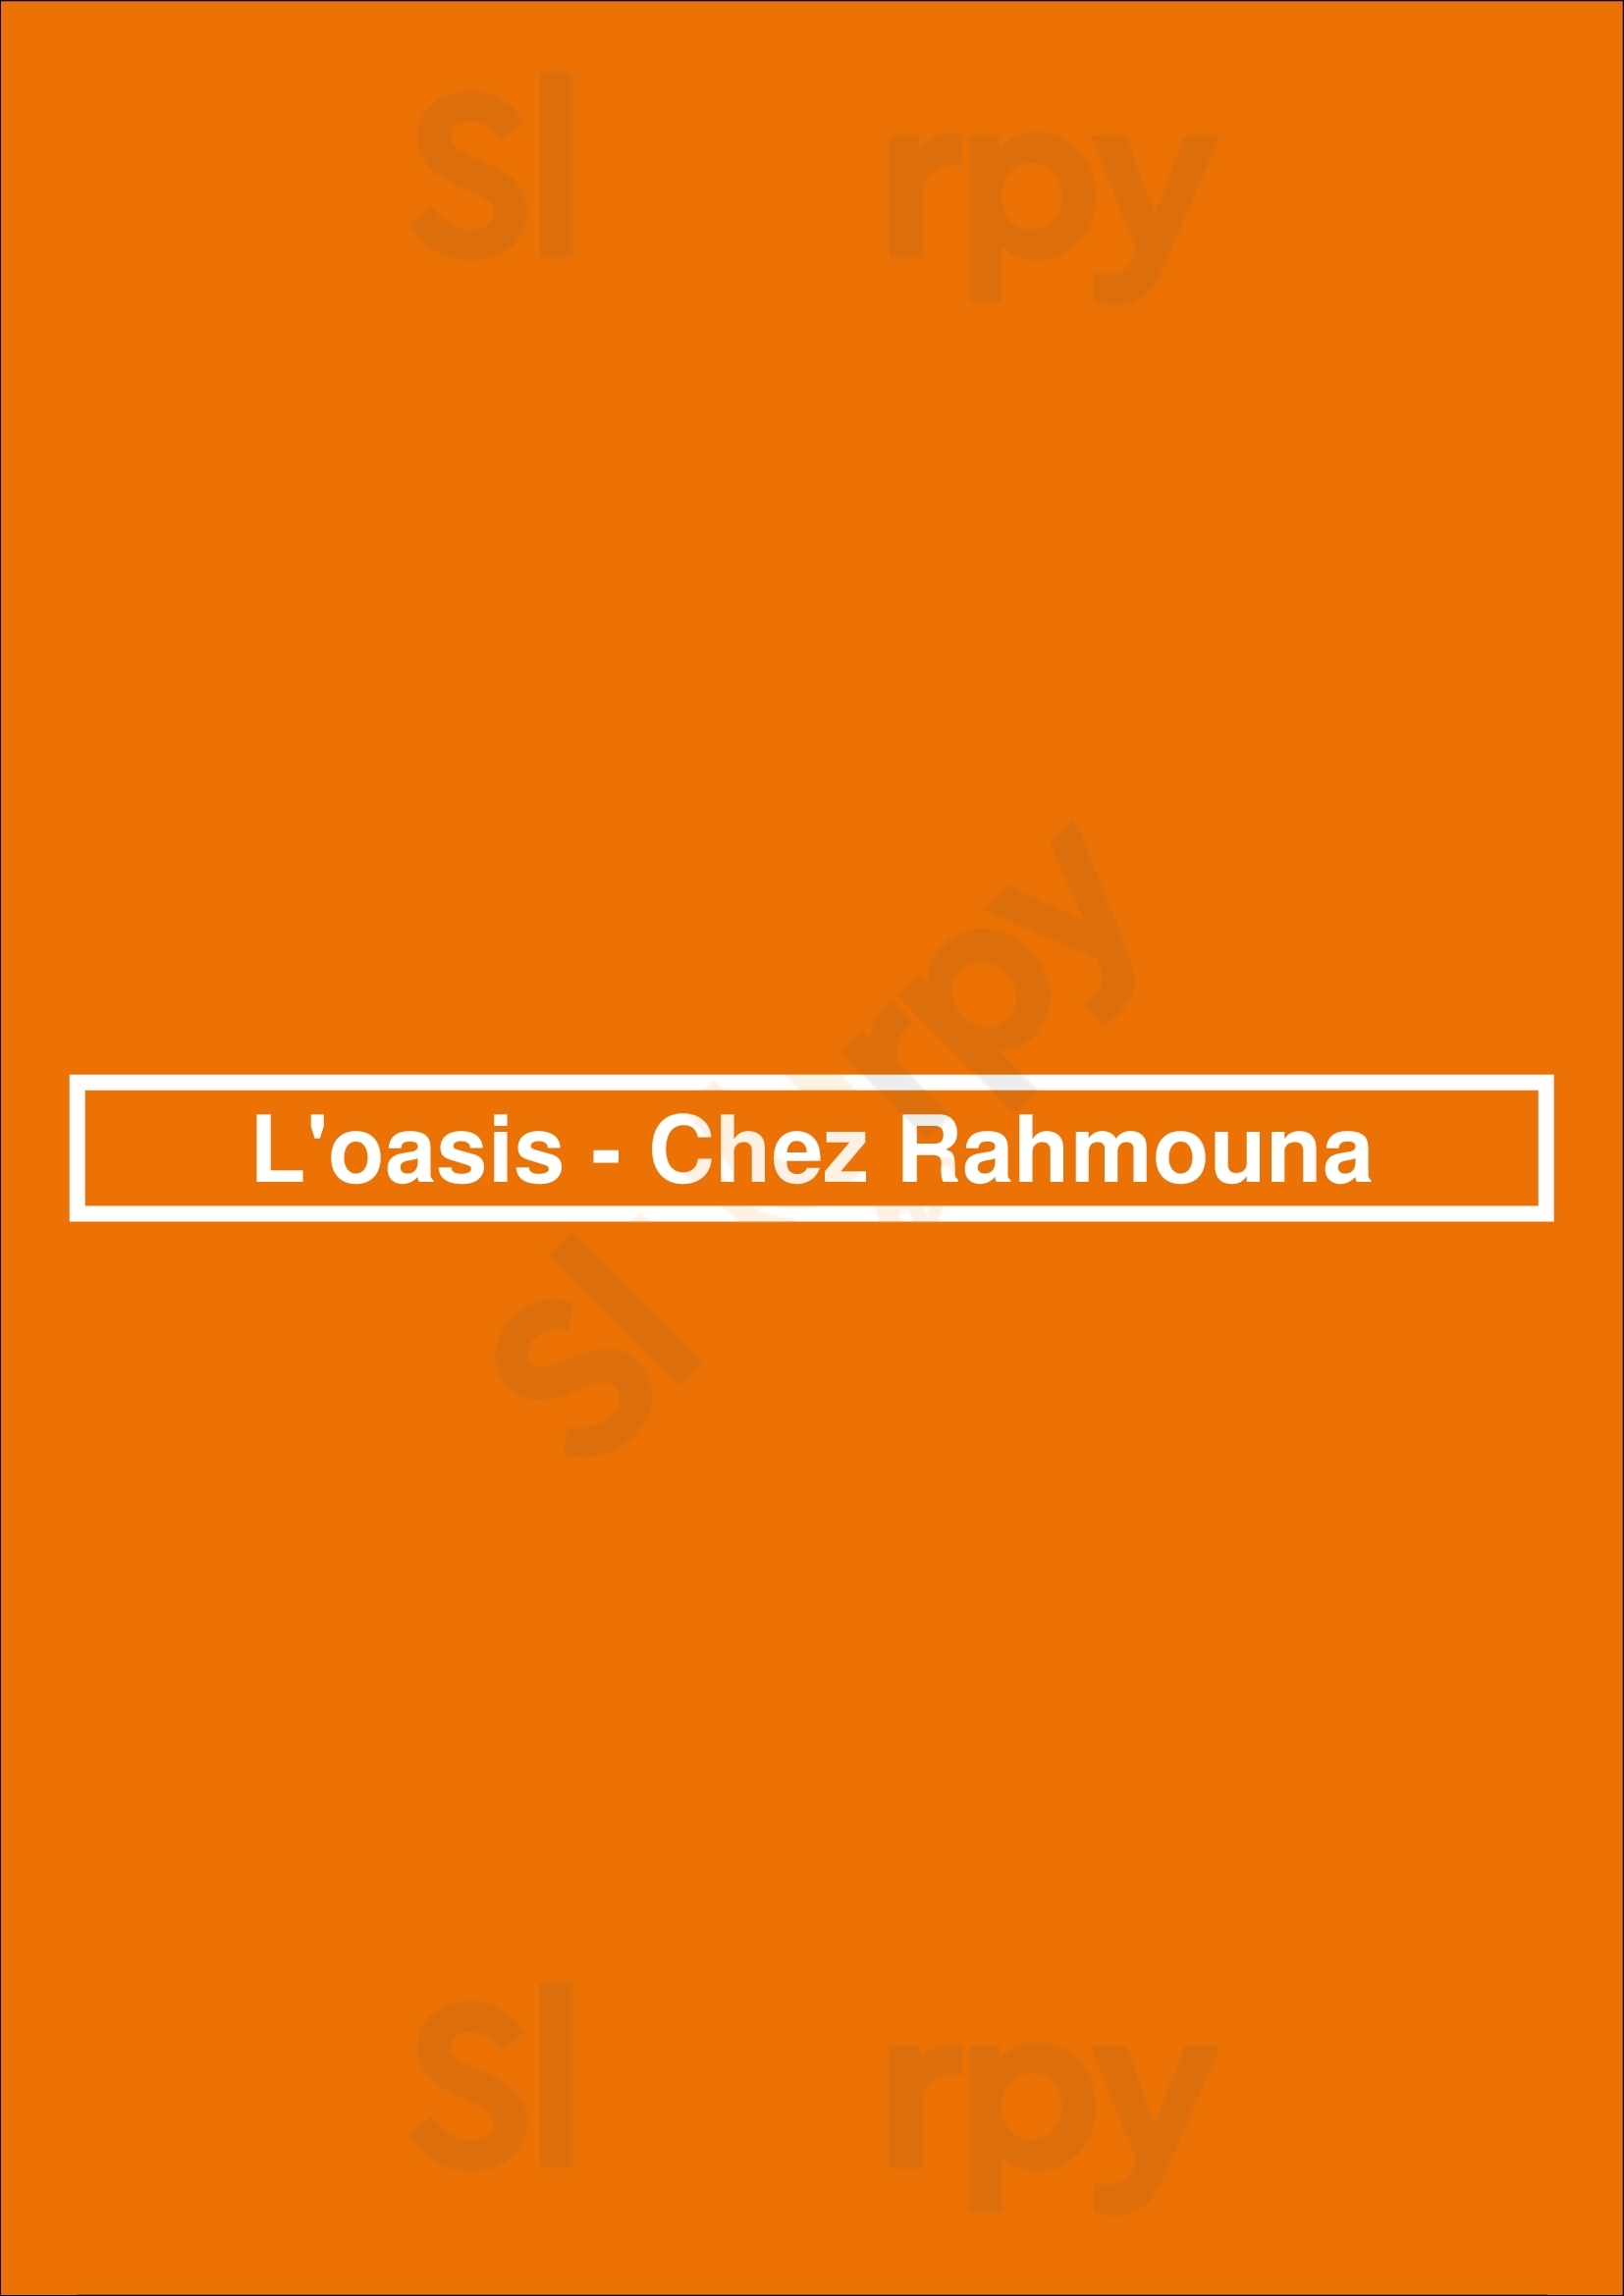 L'oasis - Chez Rahmouna Ath Menu - 1